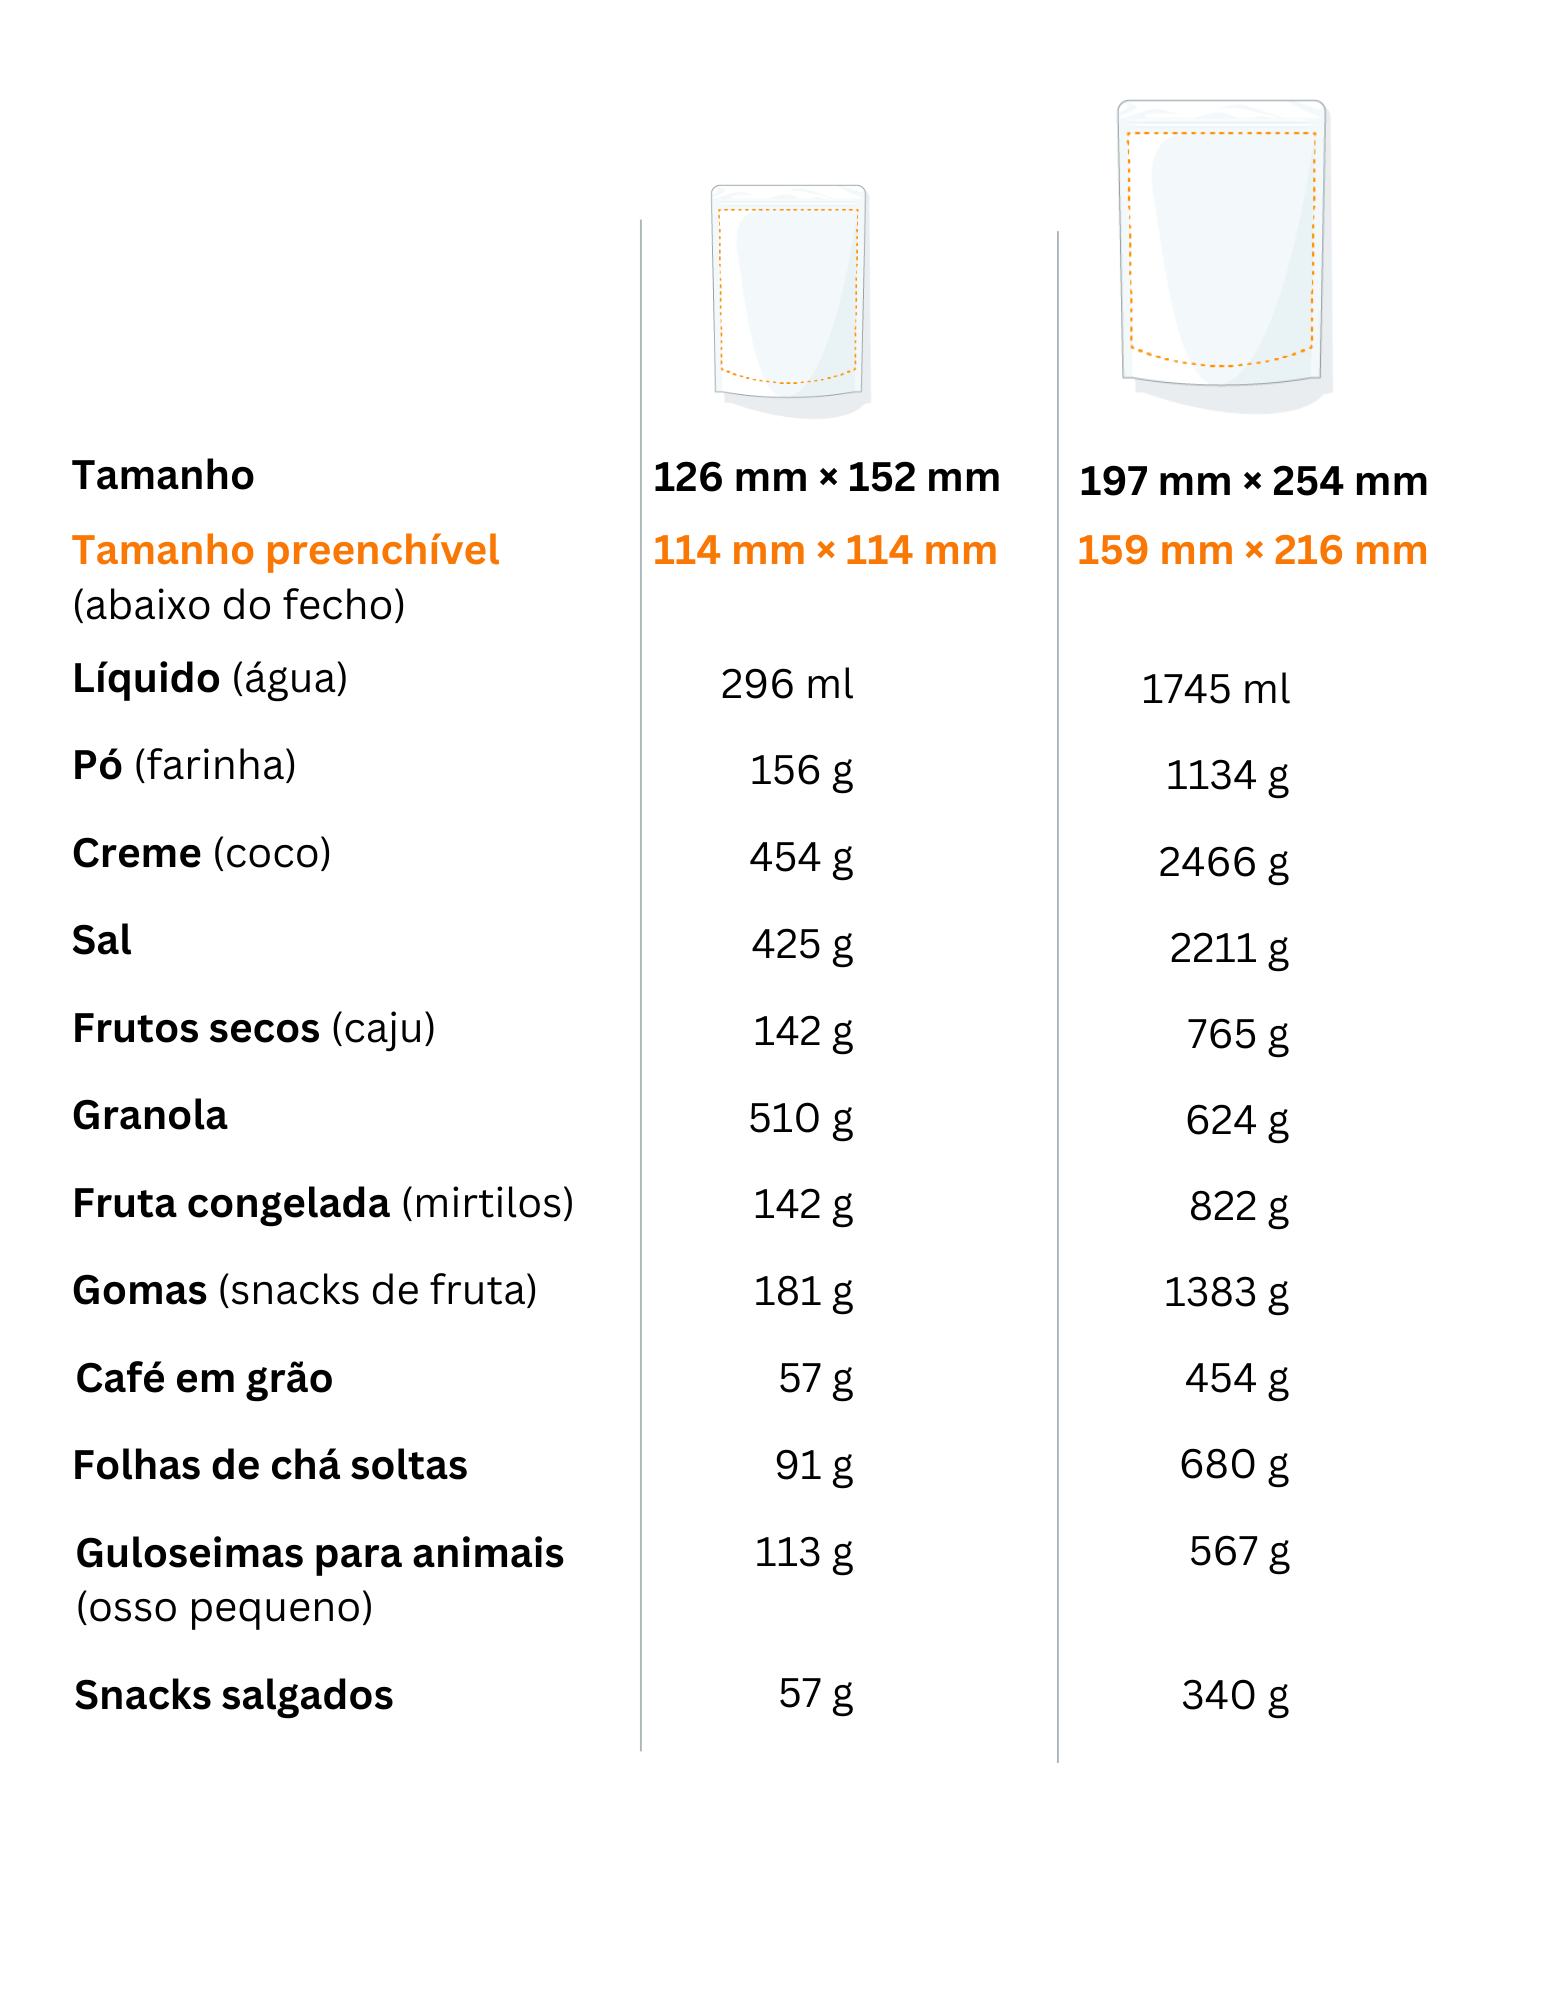 tabela com o tipo de produto e respetivo limite de quantidade dos sacos stand up